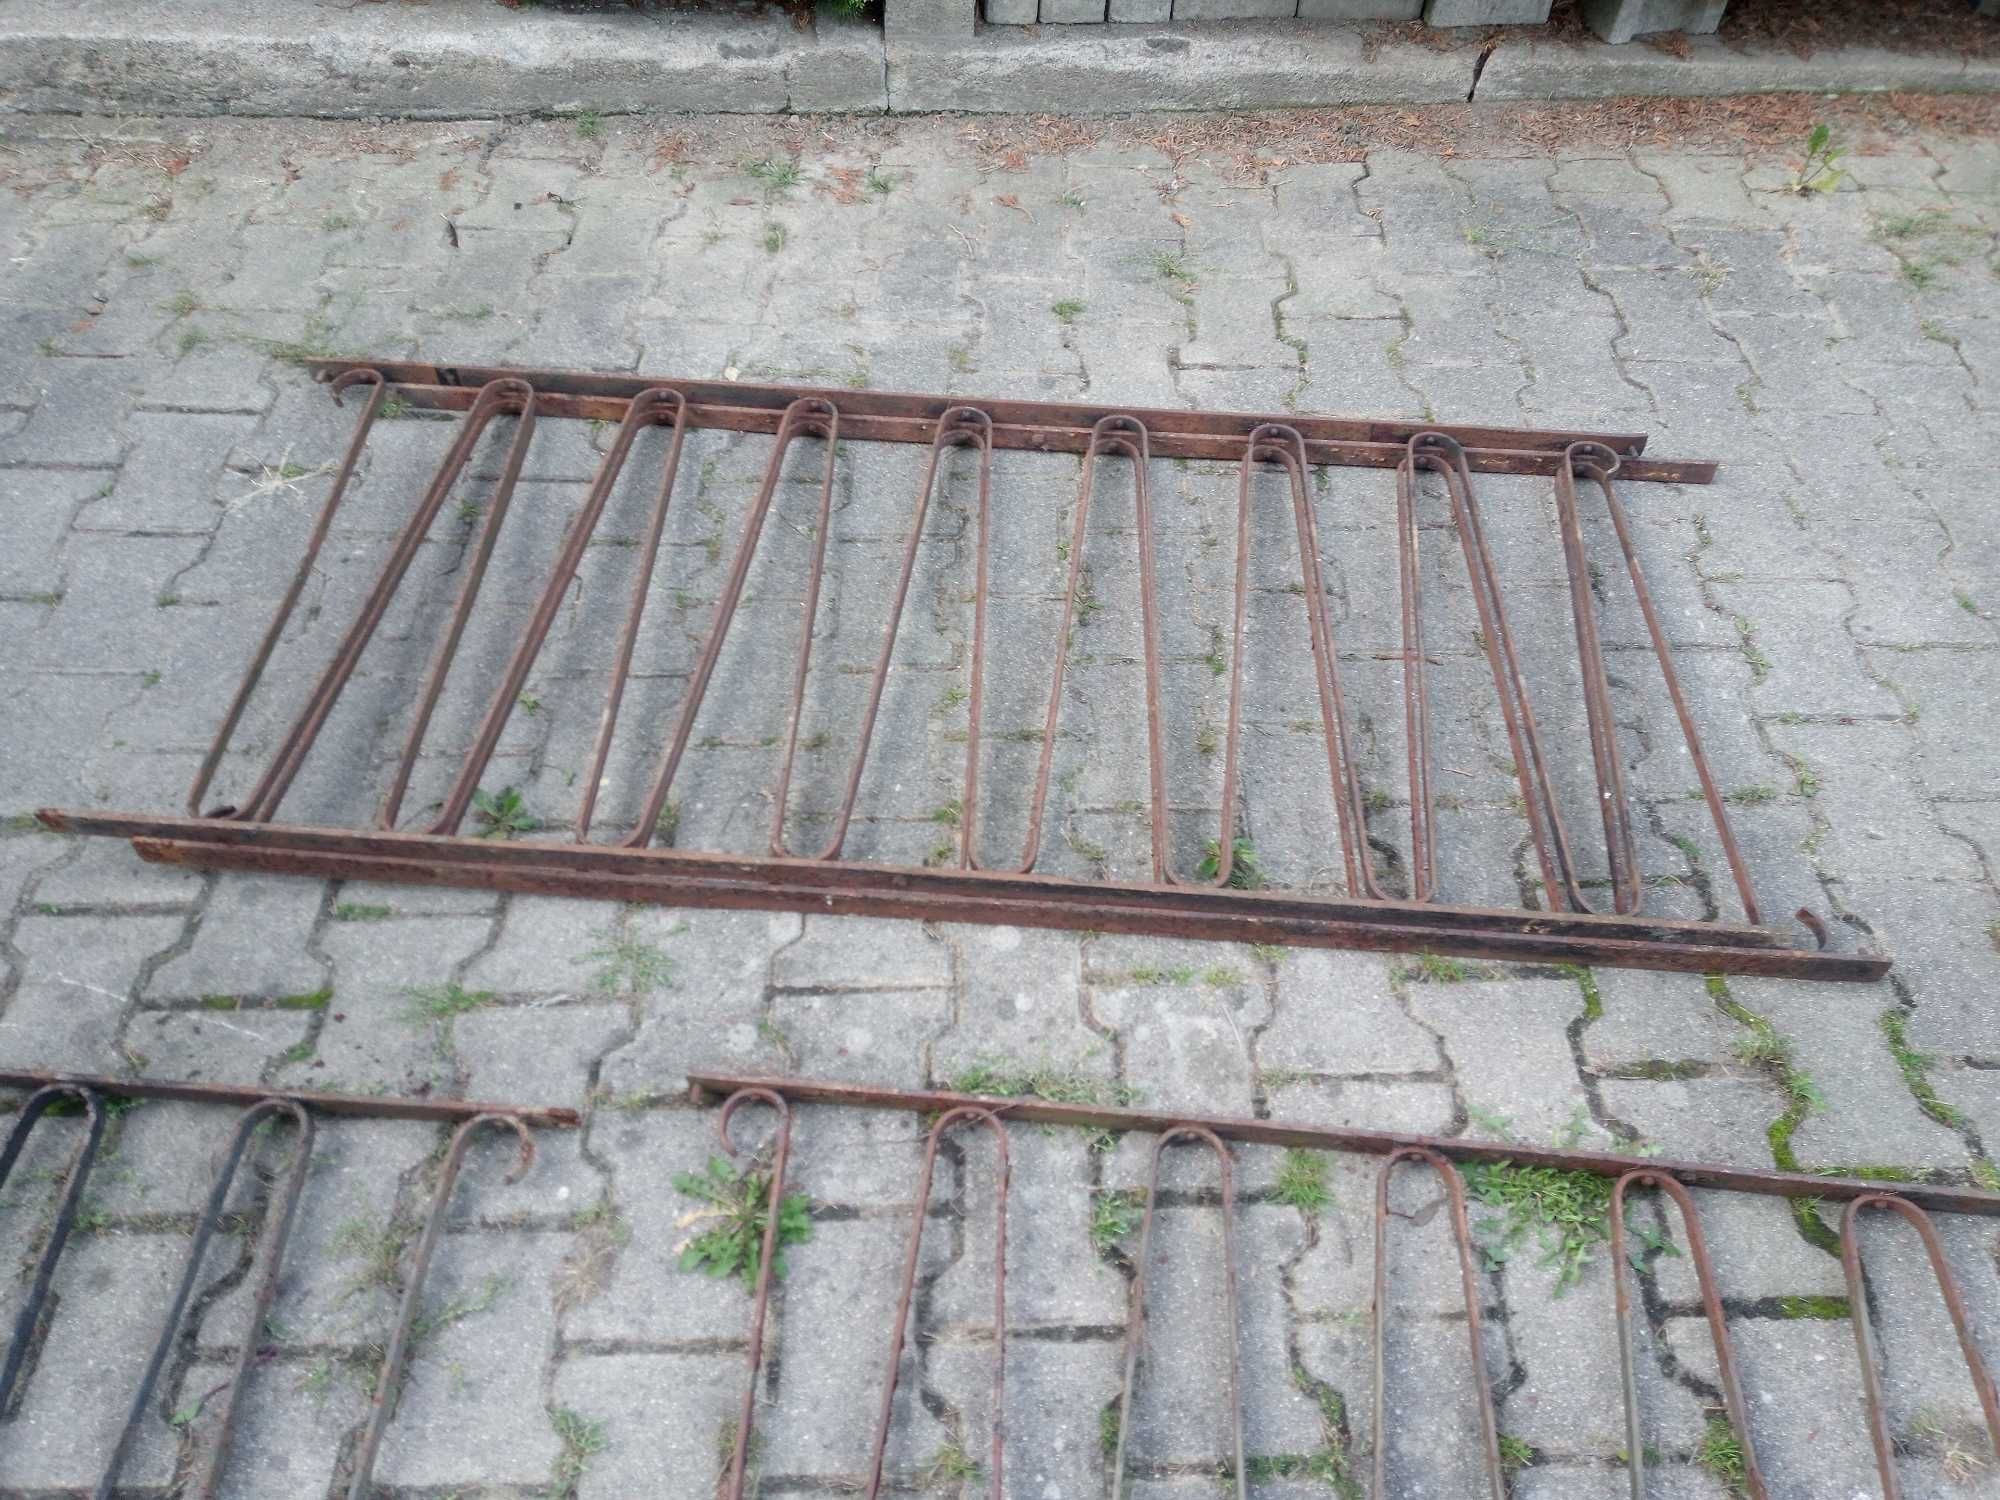 19szt. Panel ogrodzeniowy ogrodzenie metalowe 160x70